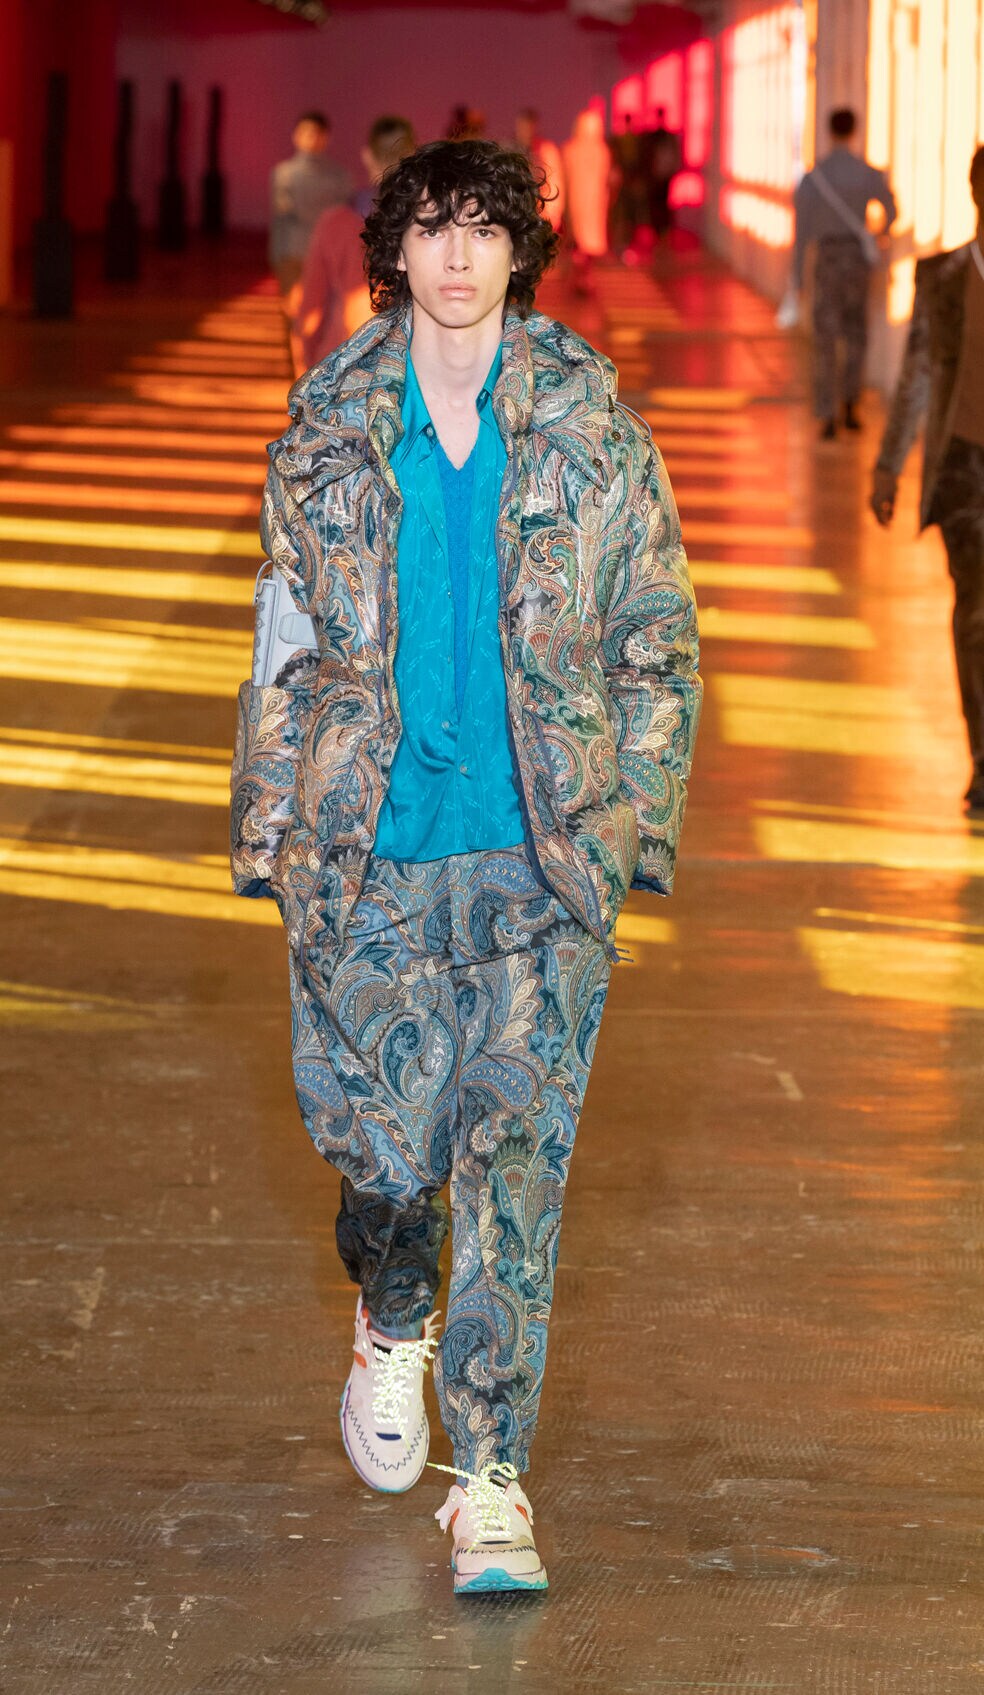 Ein Model auf dem Laufsteg, er trägt einen blauen Look mit Paisleymuster.